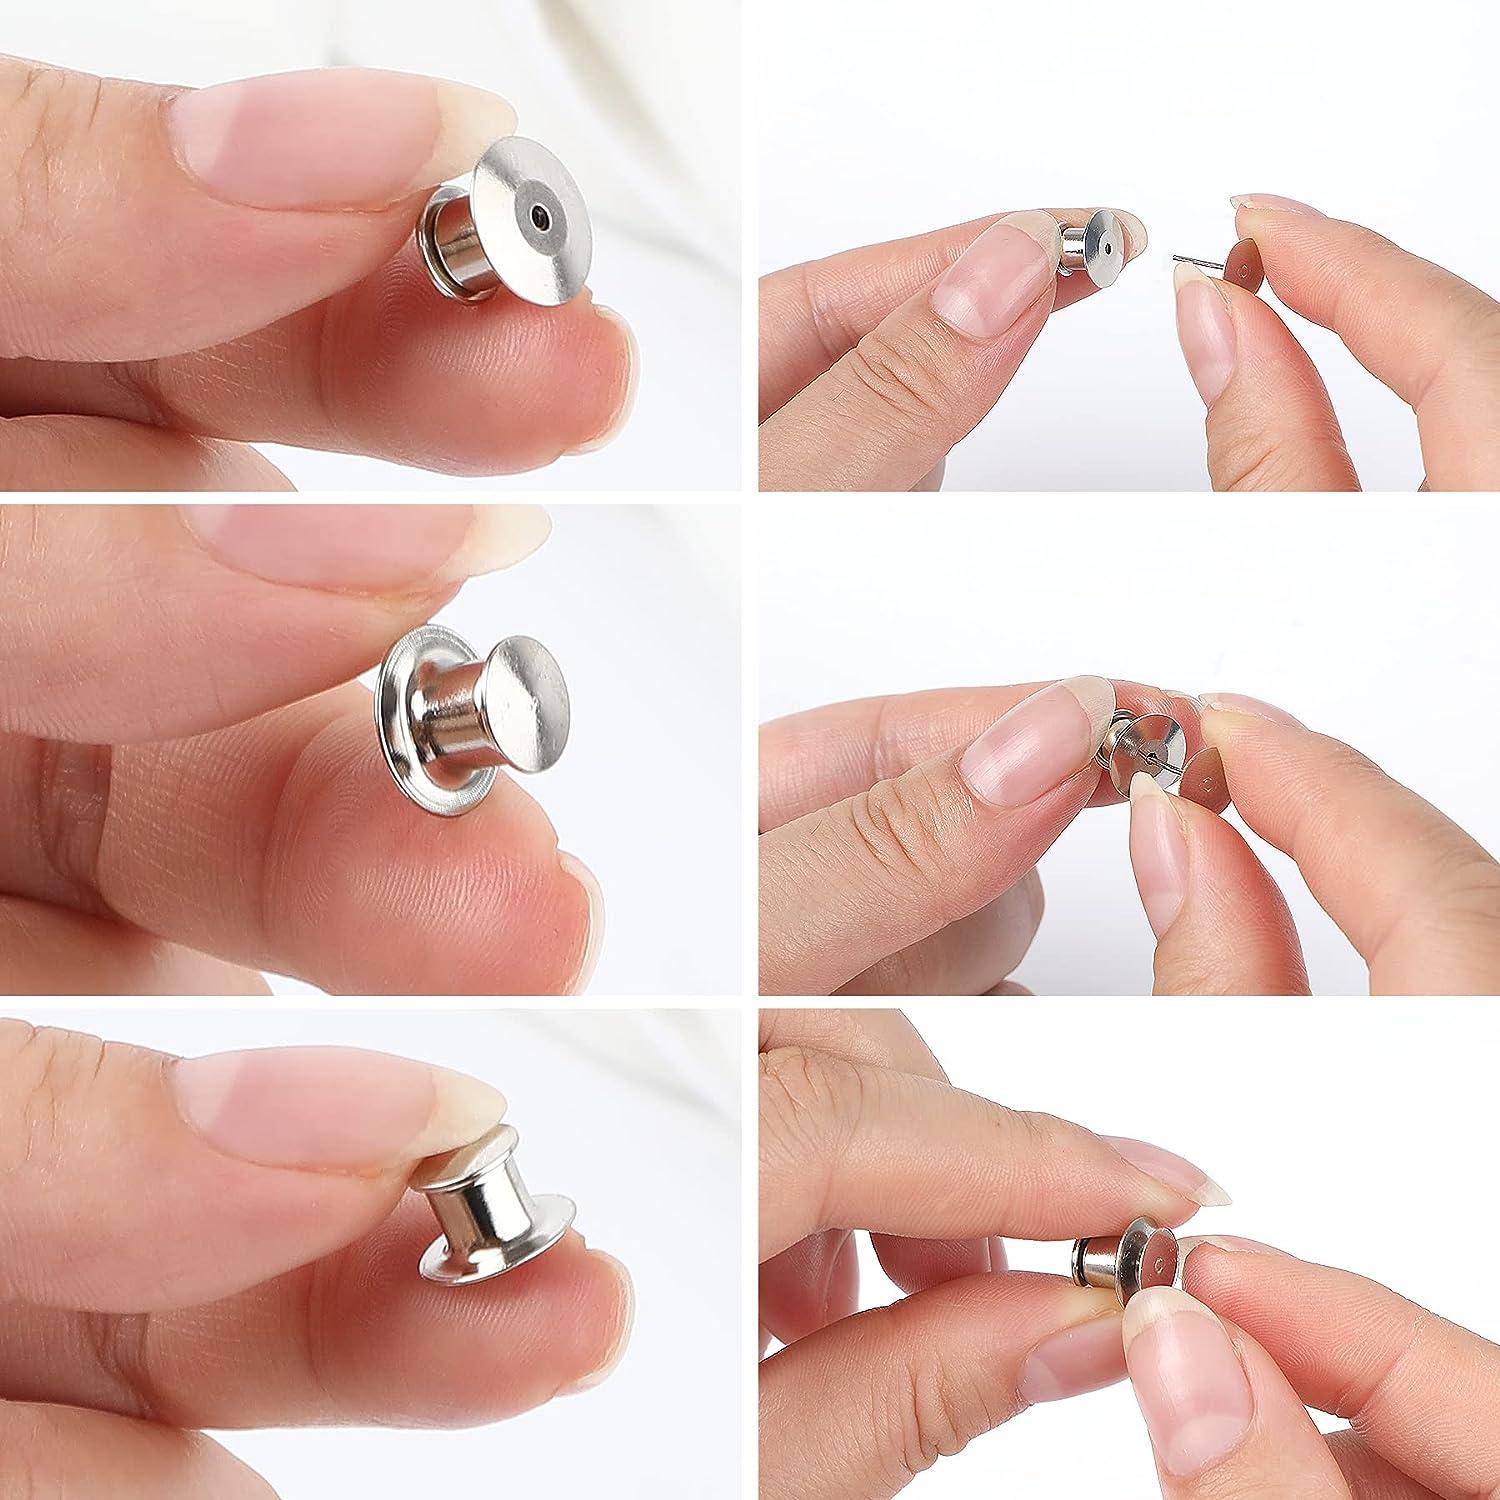 Locking Pin Backs Locking Pin Keepers Clasp Metal Pin Locks - Temu